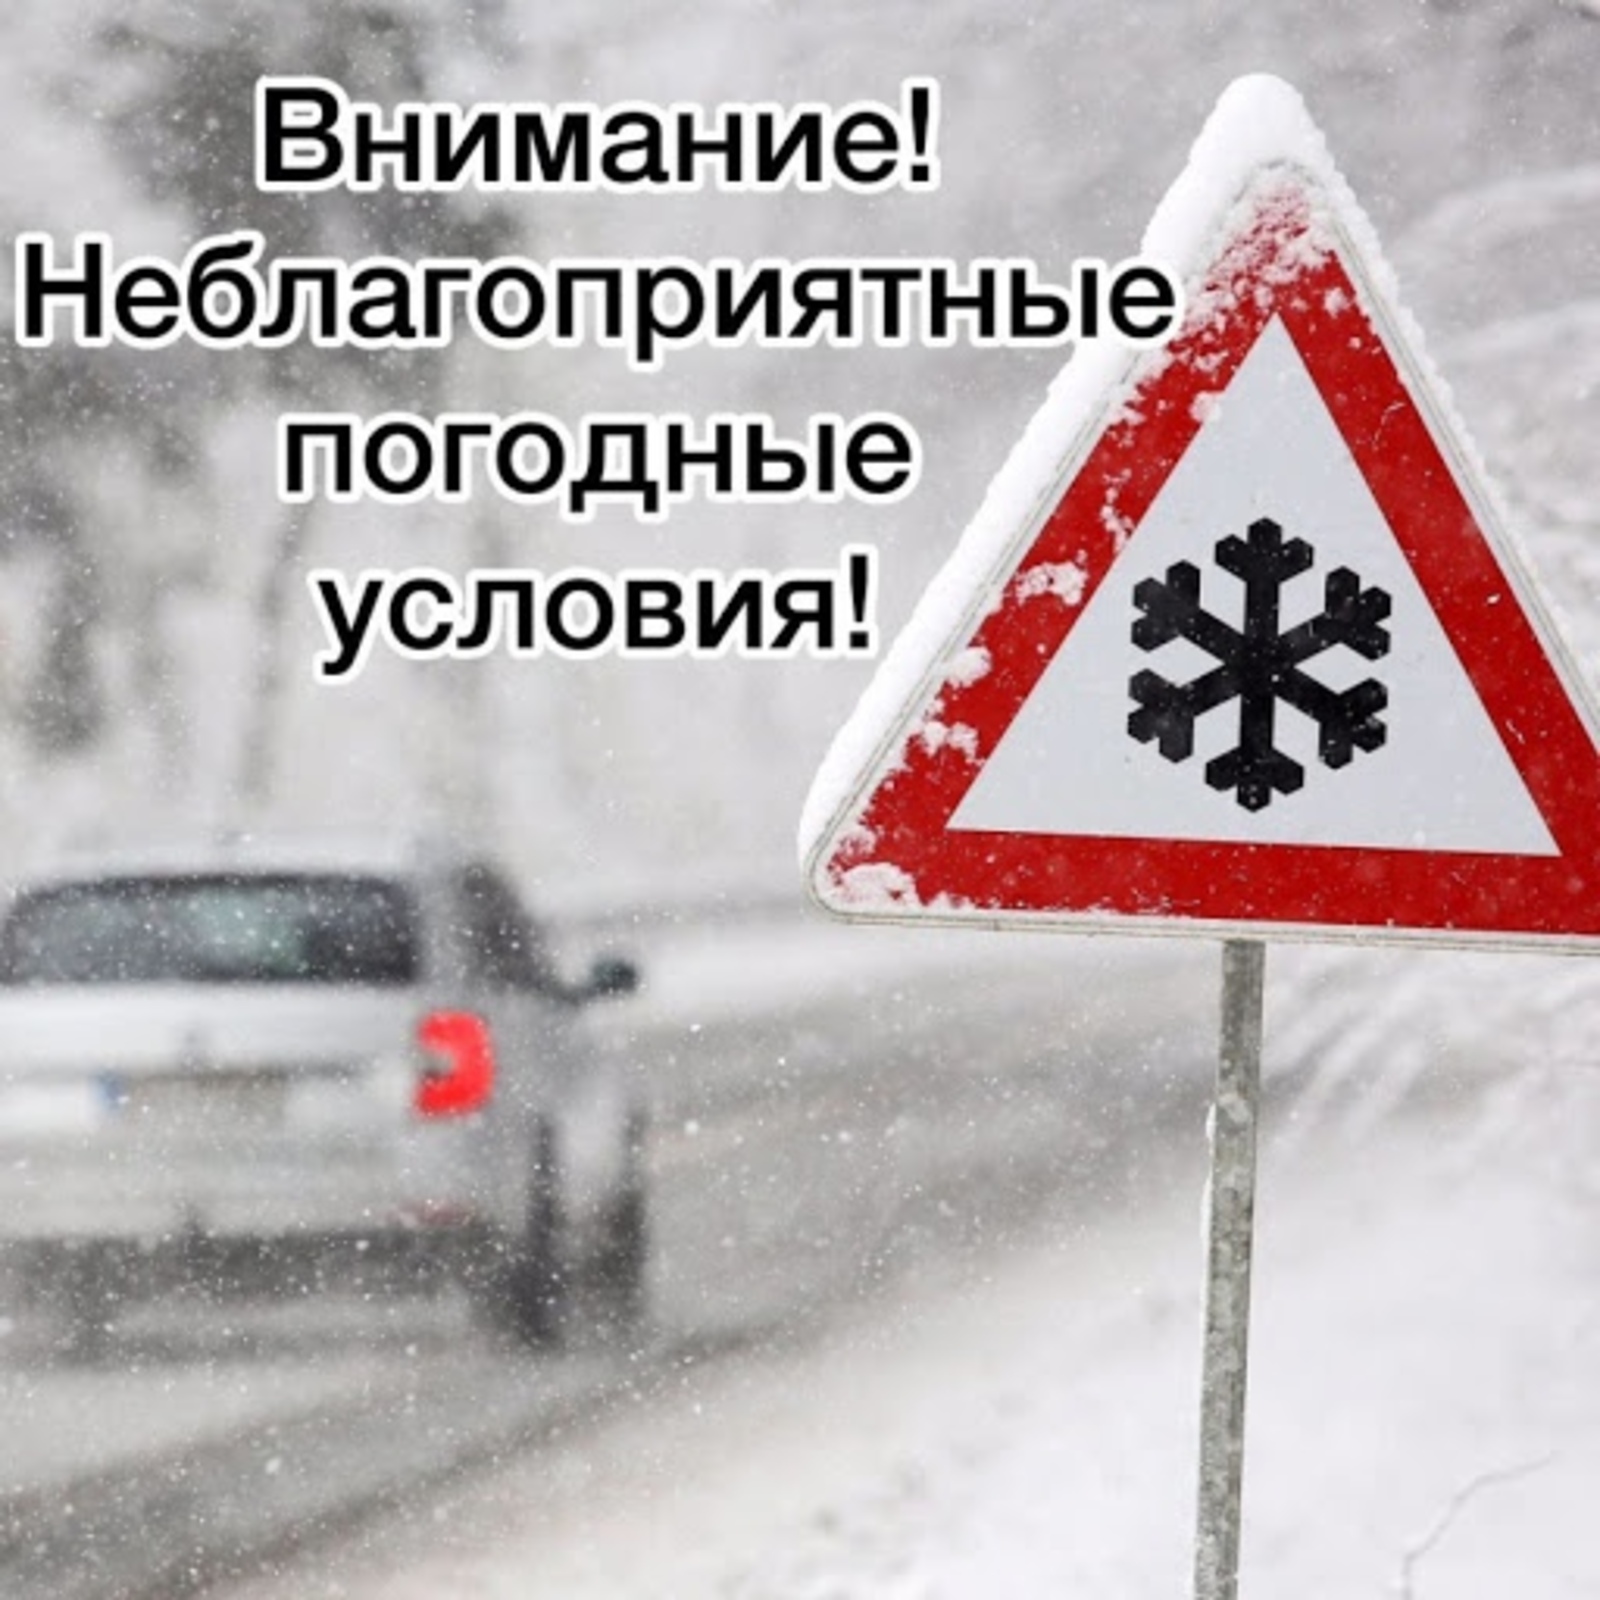 ЕДДС Хайбуллинского района сообщает о неблагоприятных погодных условиях